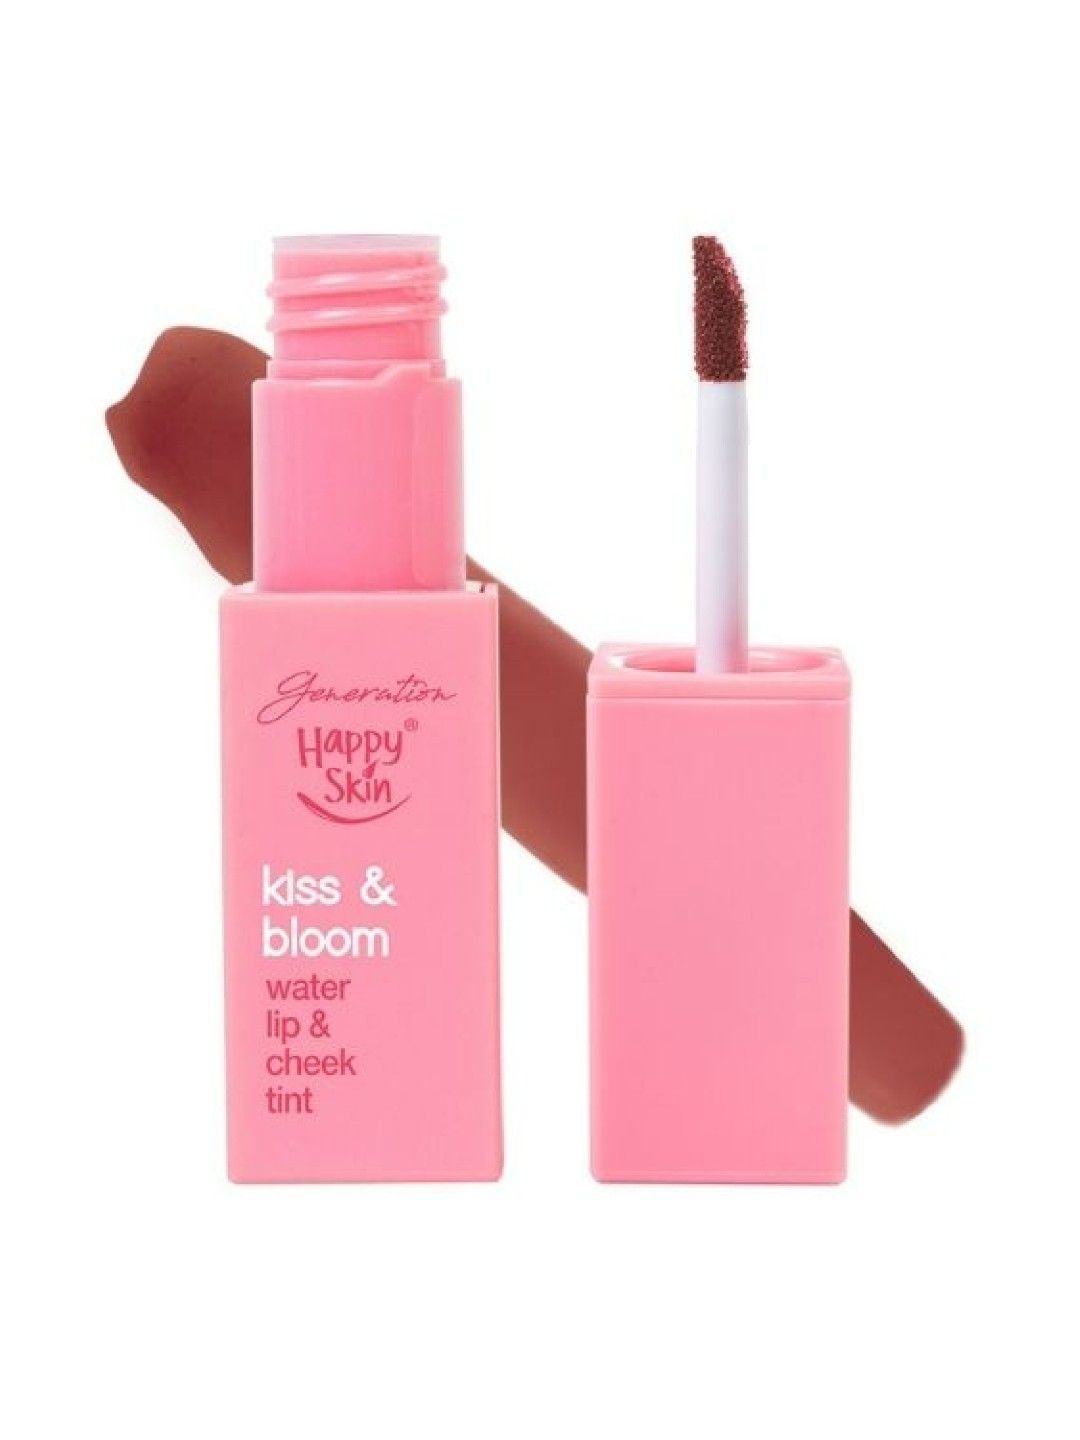 Happy Skin Generation Kiss & Bloom Water Lip & Cheek Tint